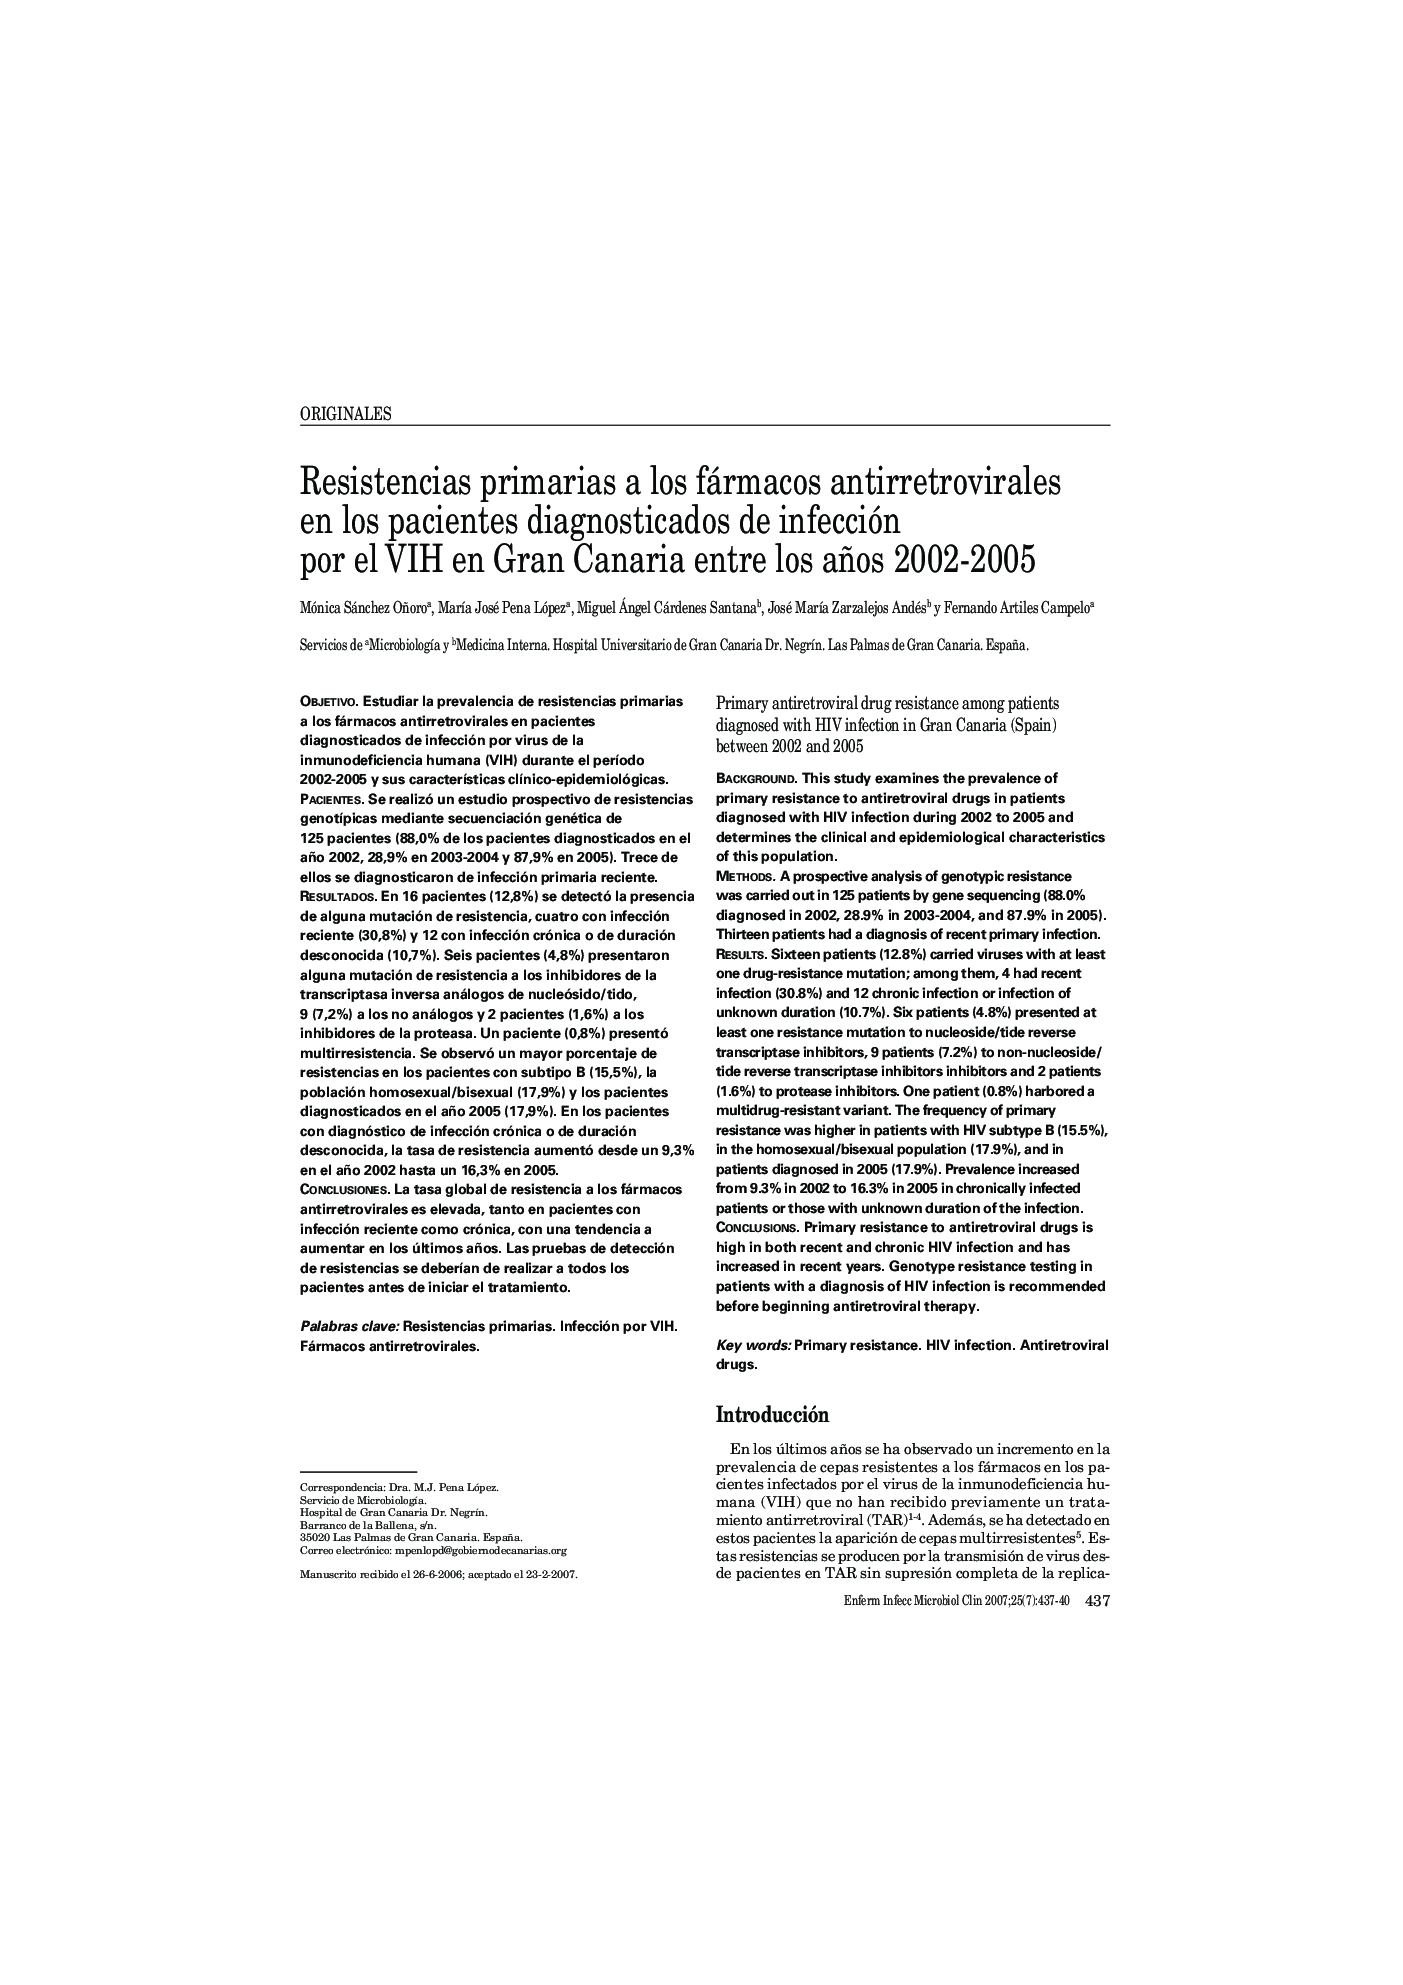 Resistencias primarias a los fármacos antirretrovirales en los pacientes diagnosticados de infección por el VIH en Gran Canaria entre los años 2002-2005